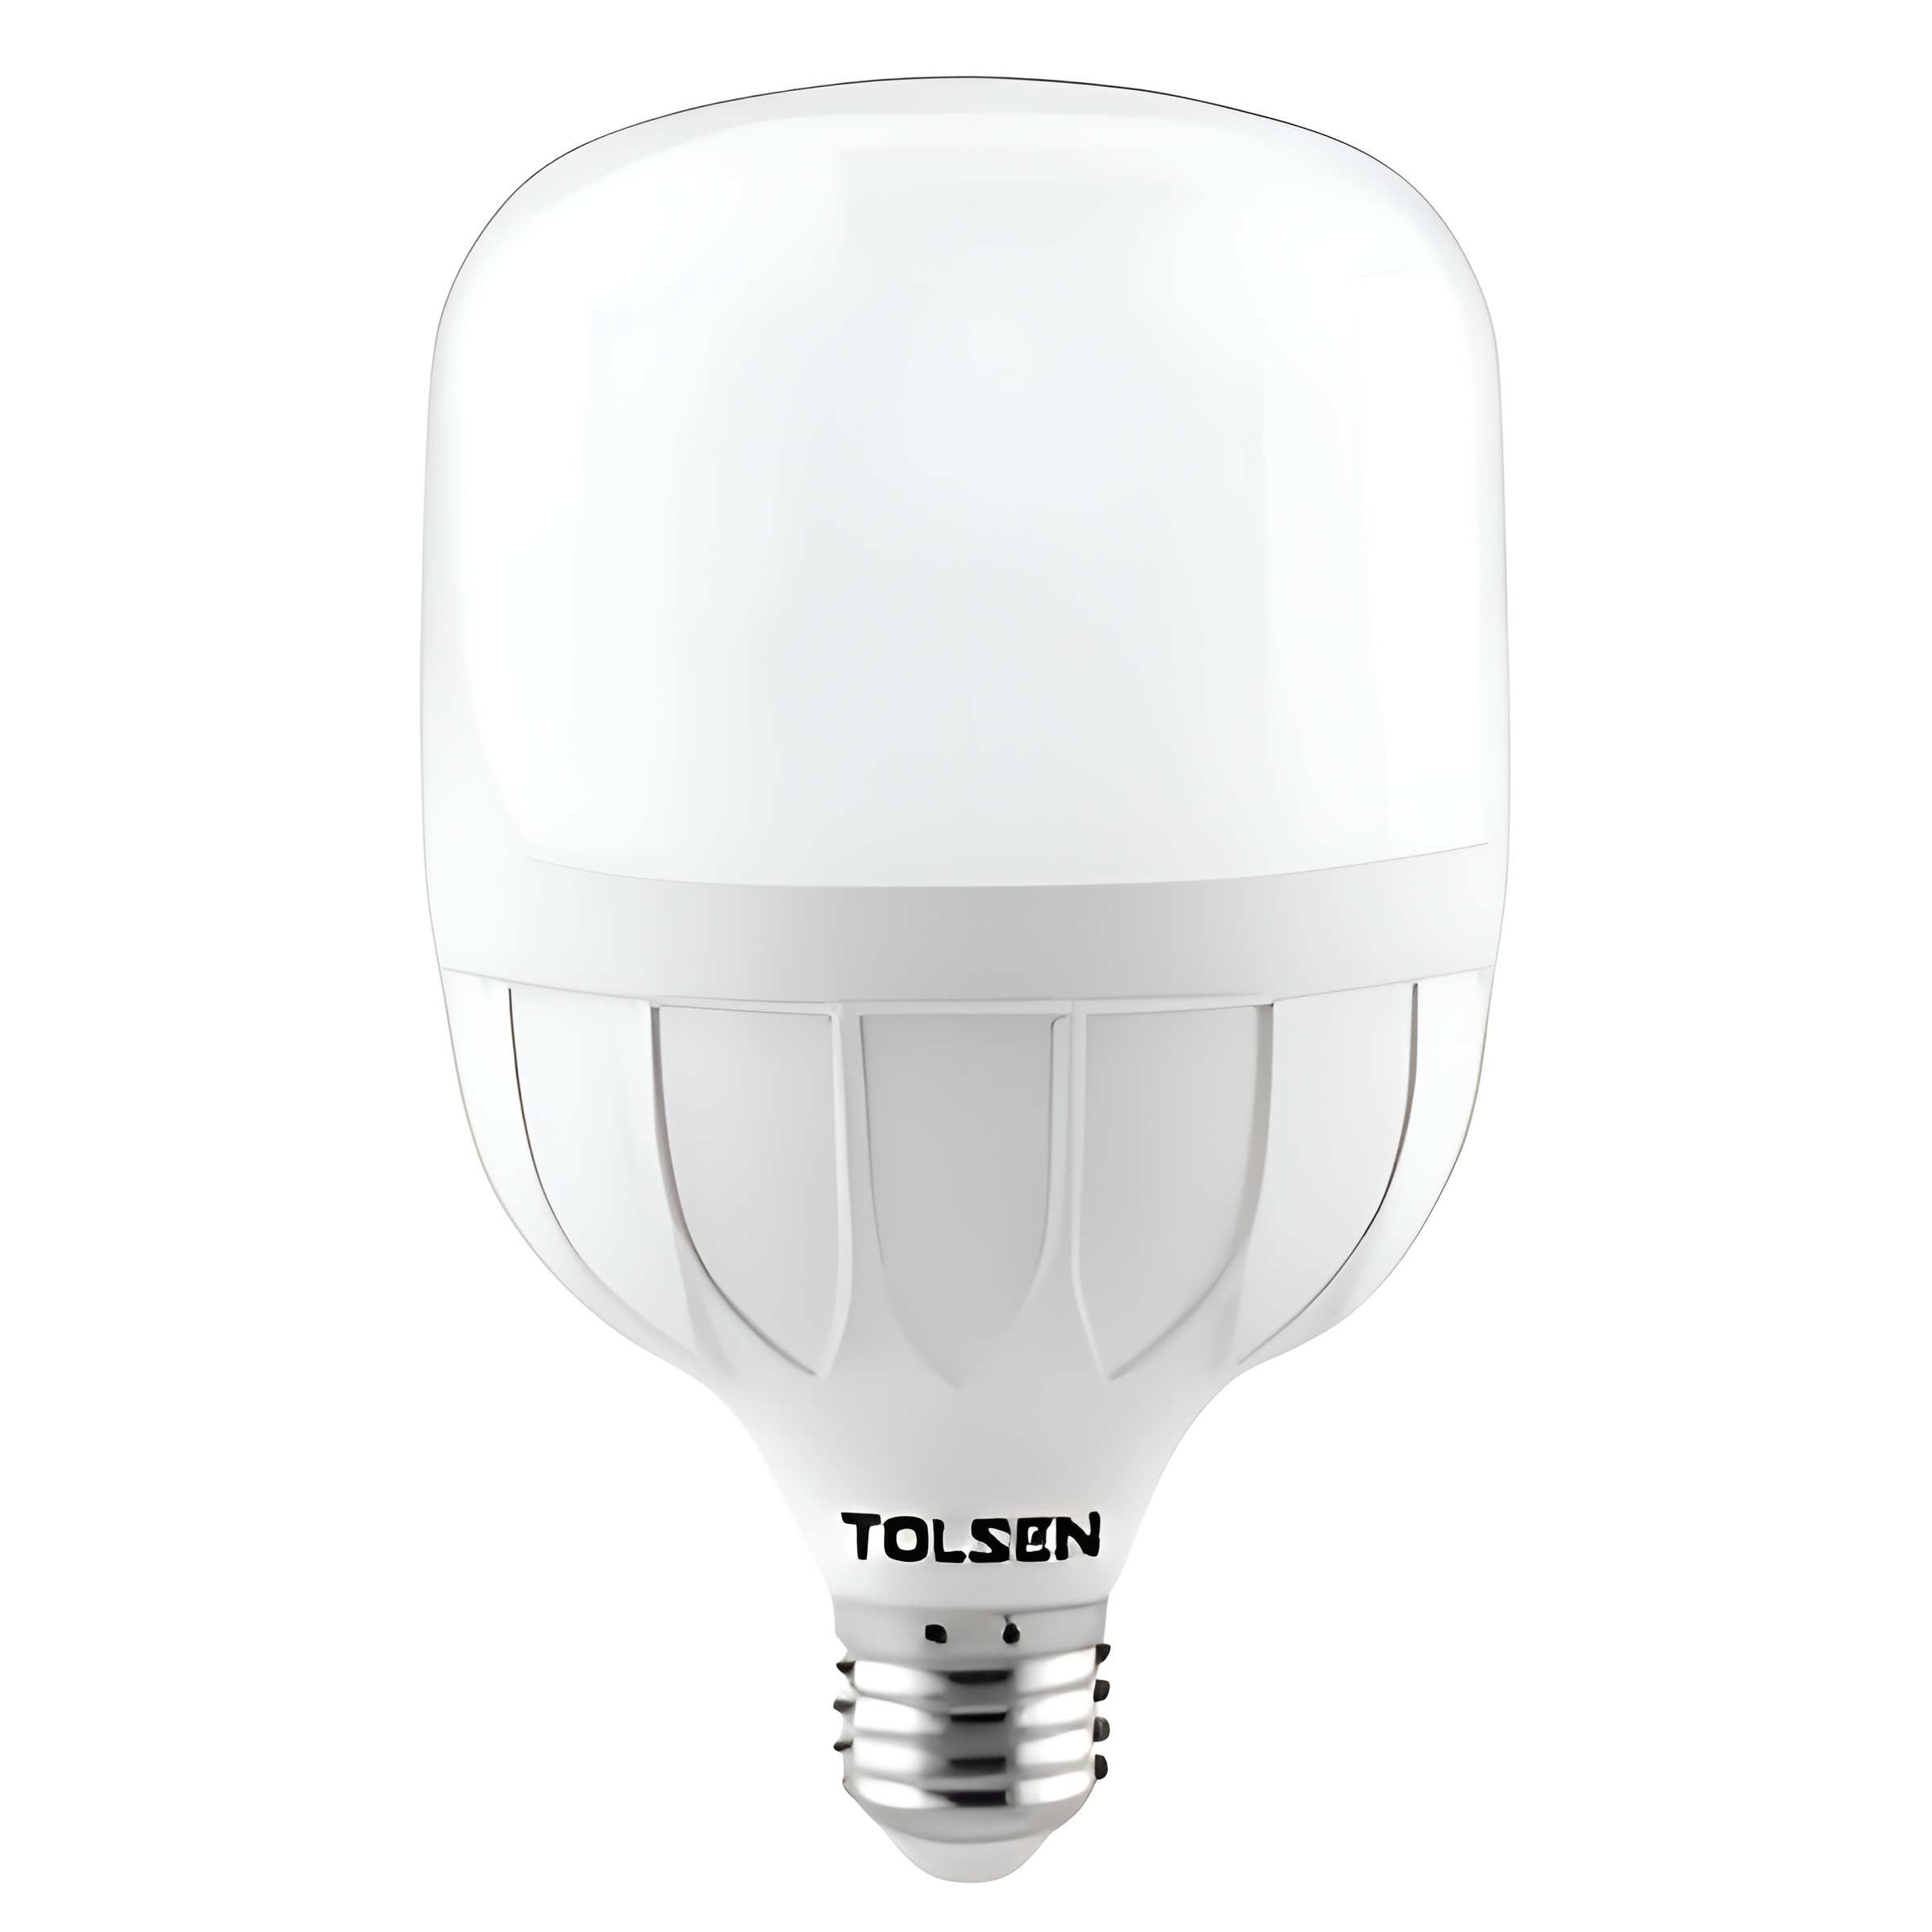 Hình ảnh 1 của mặt hàng Đèn LED Bulb 40W Tolsen 60213